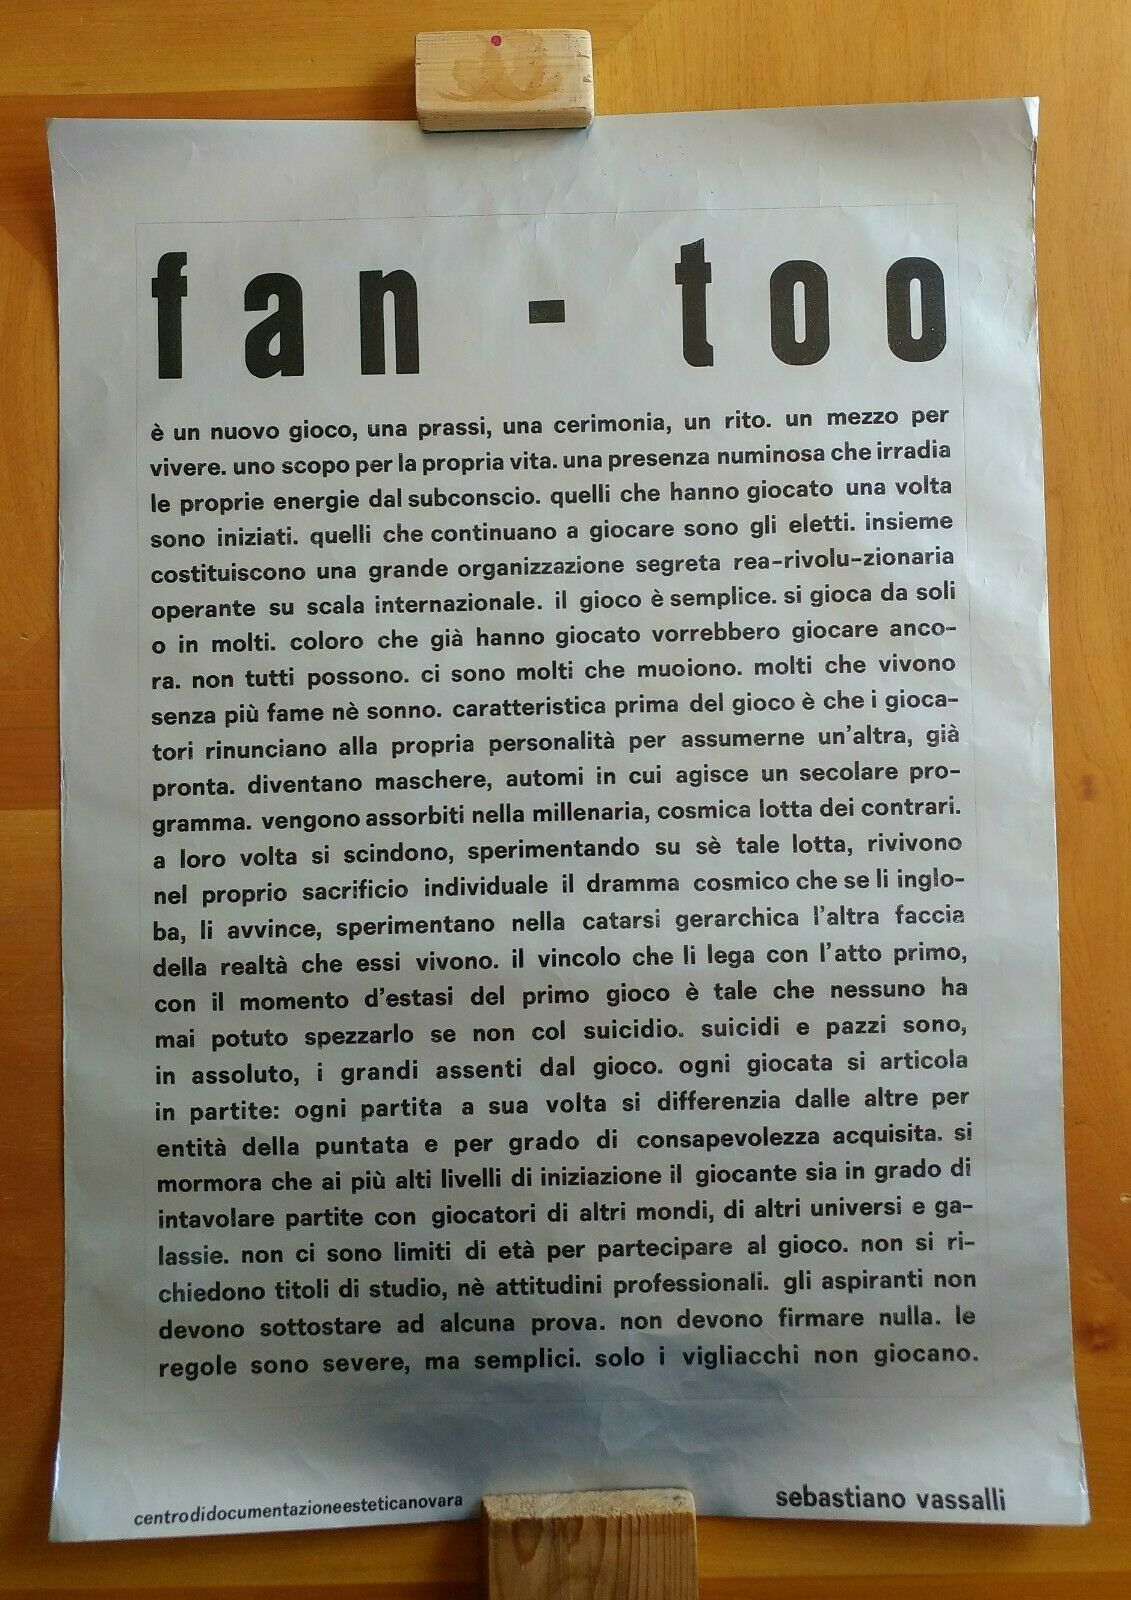 “fan – too” un manifesto di Sebastiano Vassalli in asta su eBay